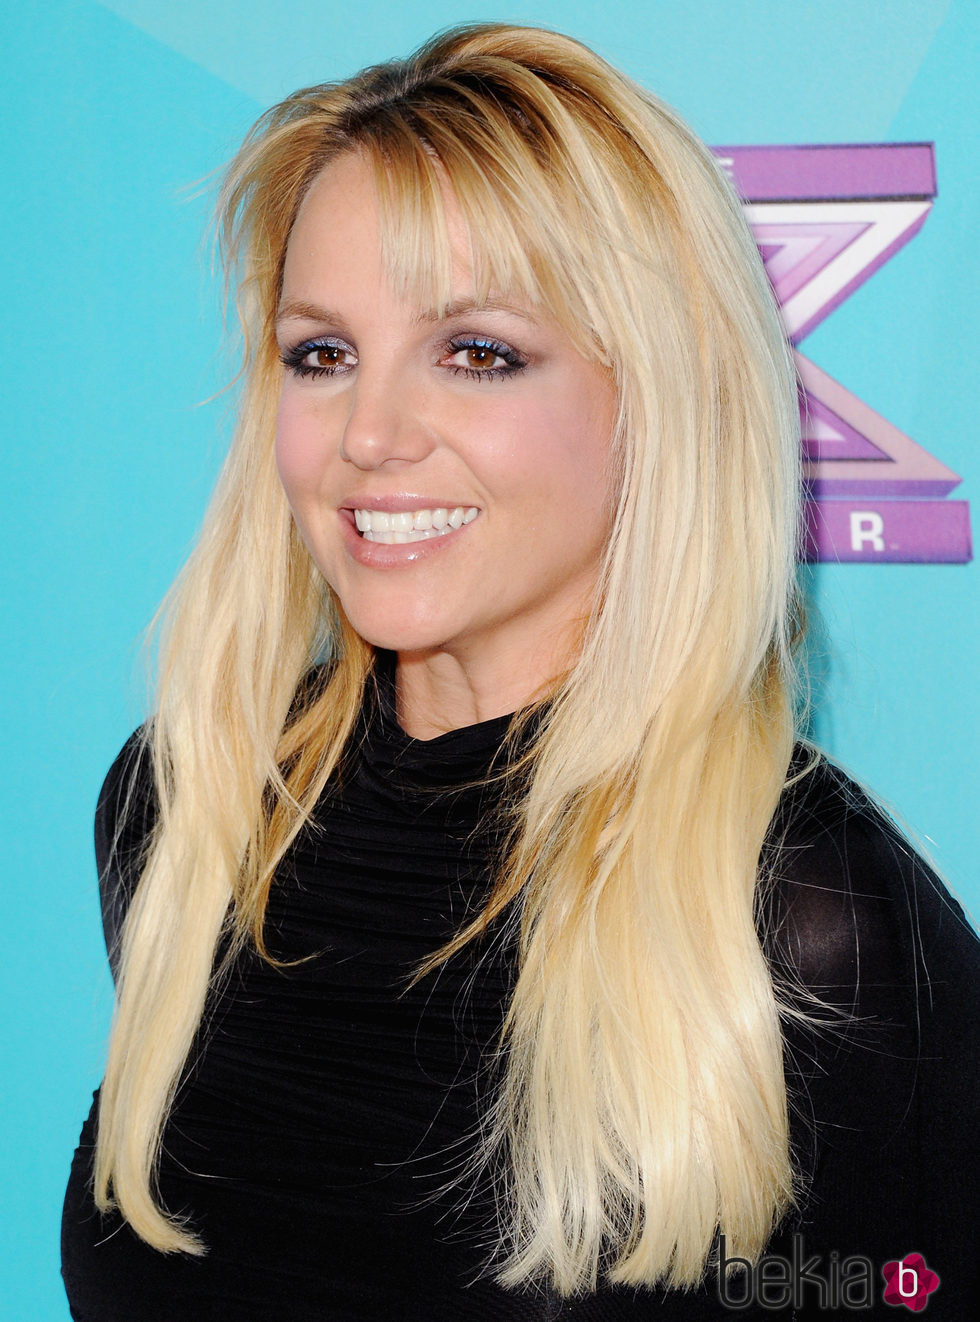 Britney Spears con melena XL y flequillo ladeado